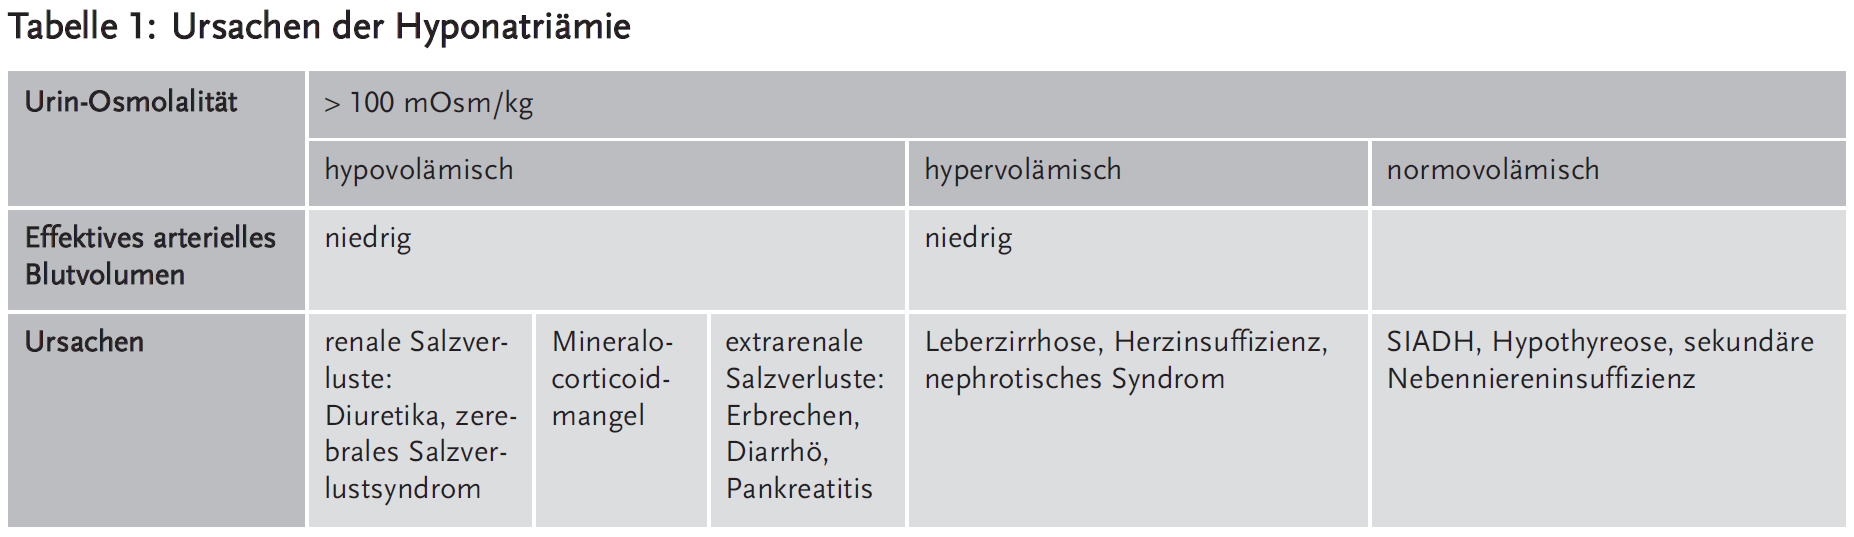 Tabelle 1: Ursachen der Hyponatriämie